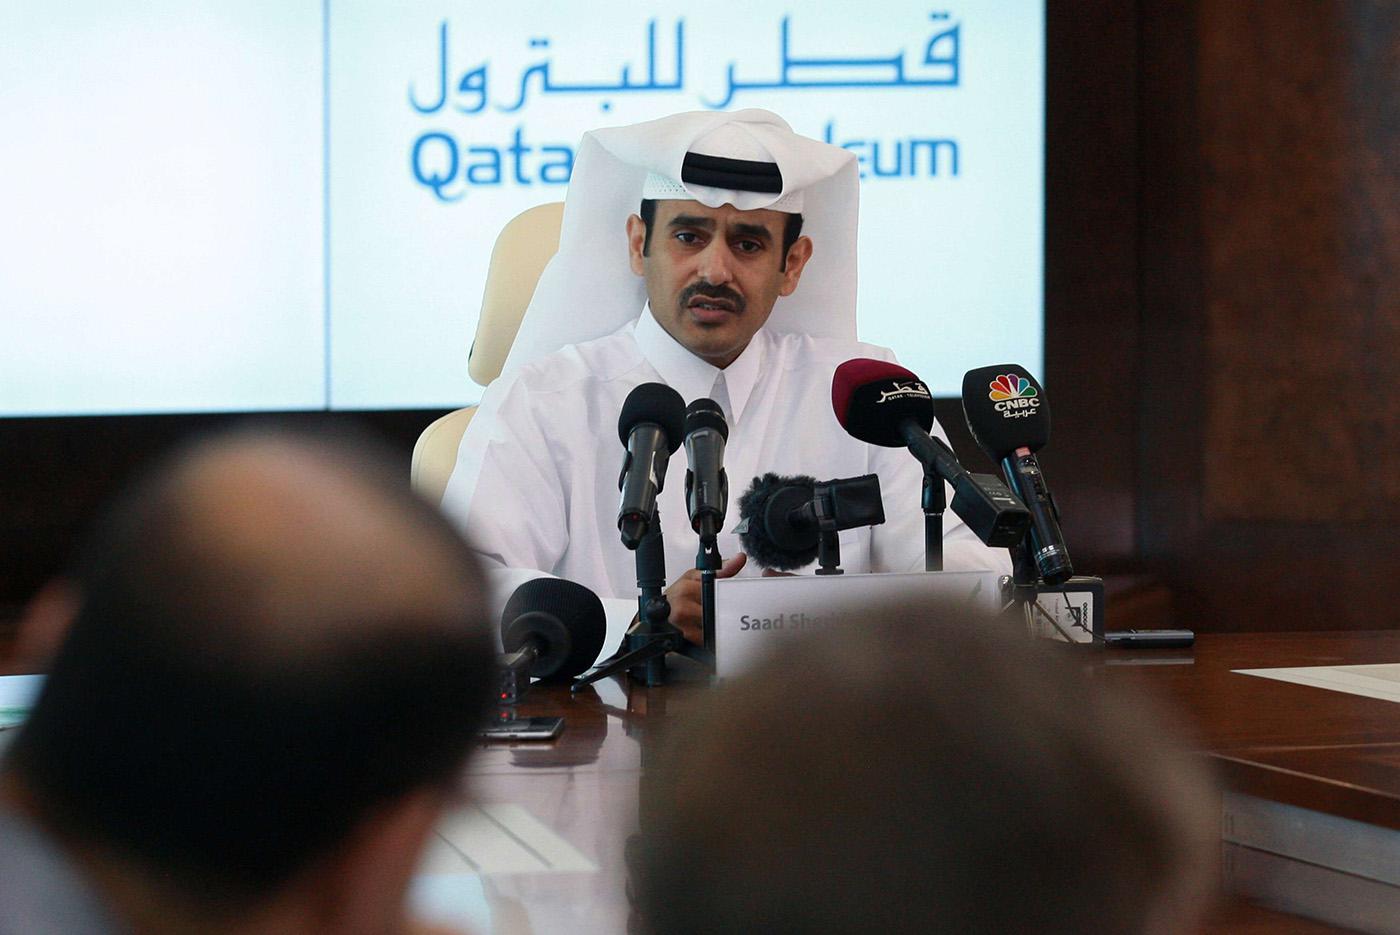 قطر للبترول تناشد المشترين بعد خسارة أكبر مصدر لغازها